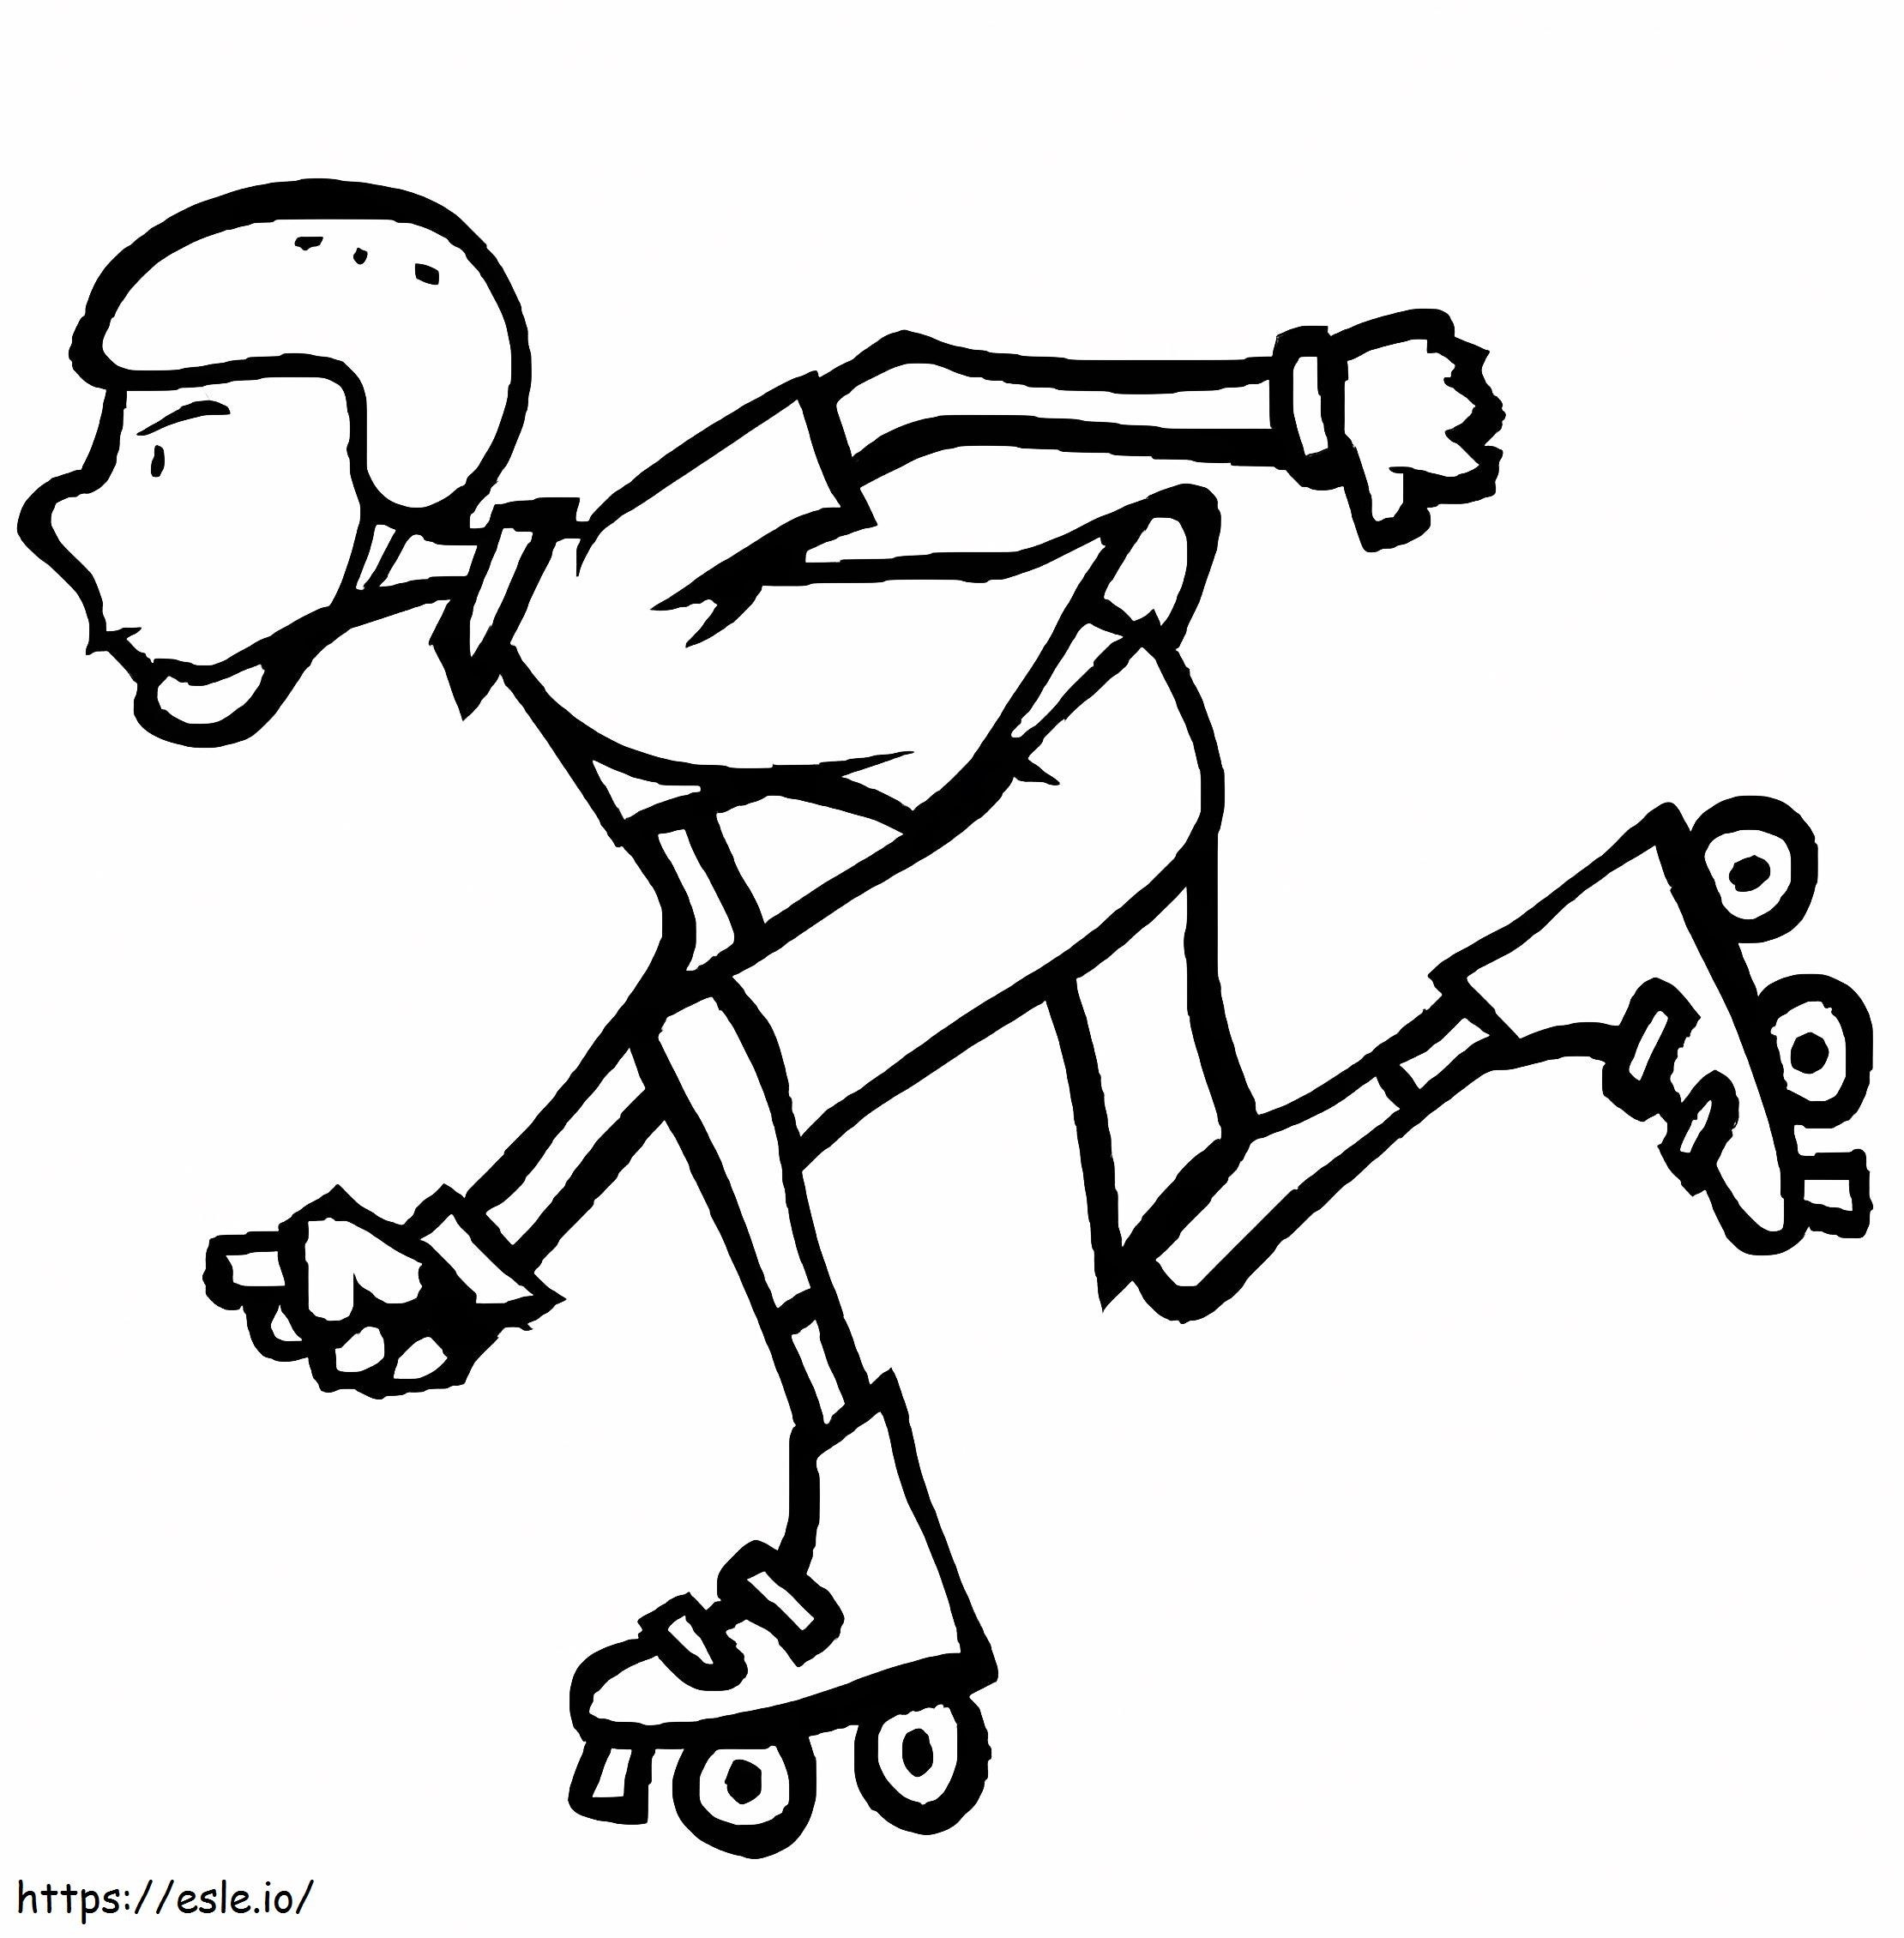 Coloriage Un garçon sur des patins à roulettes à imprimer dessin